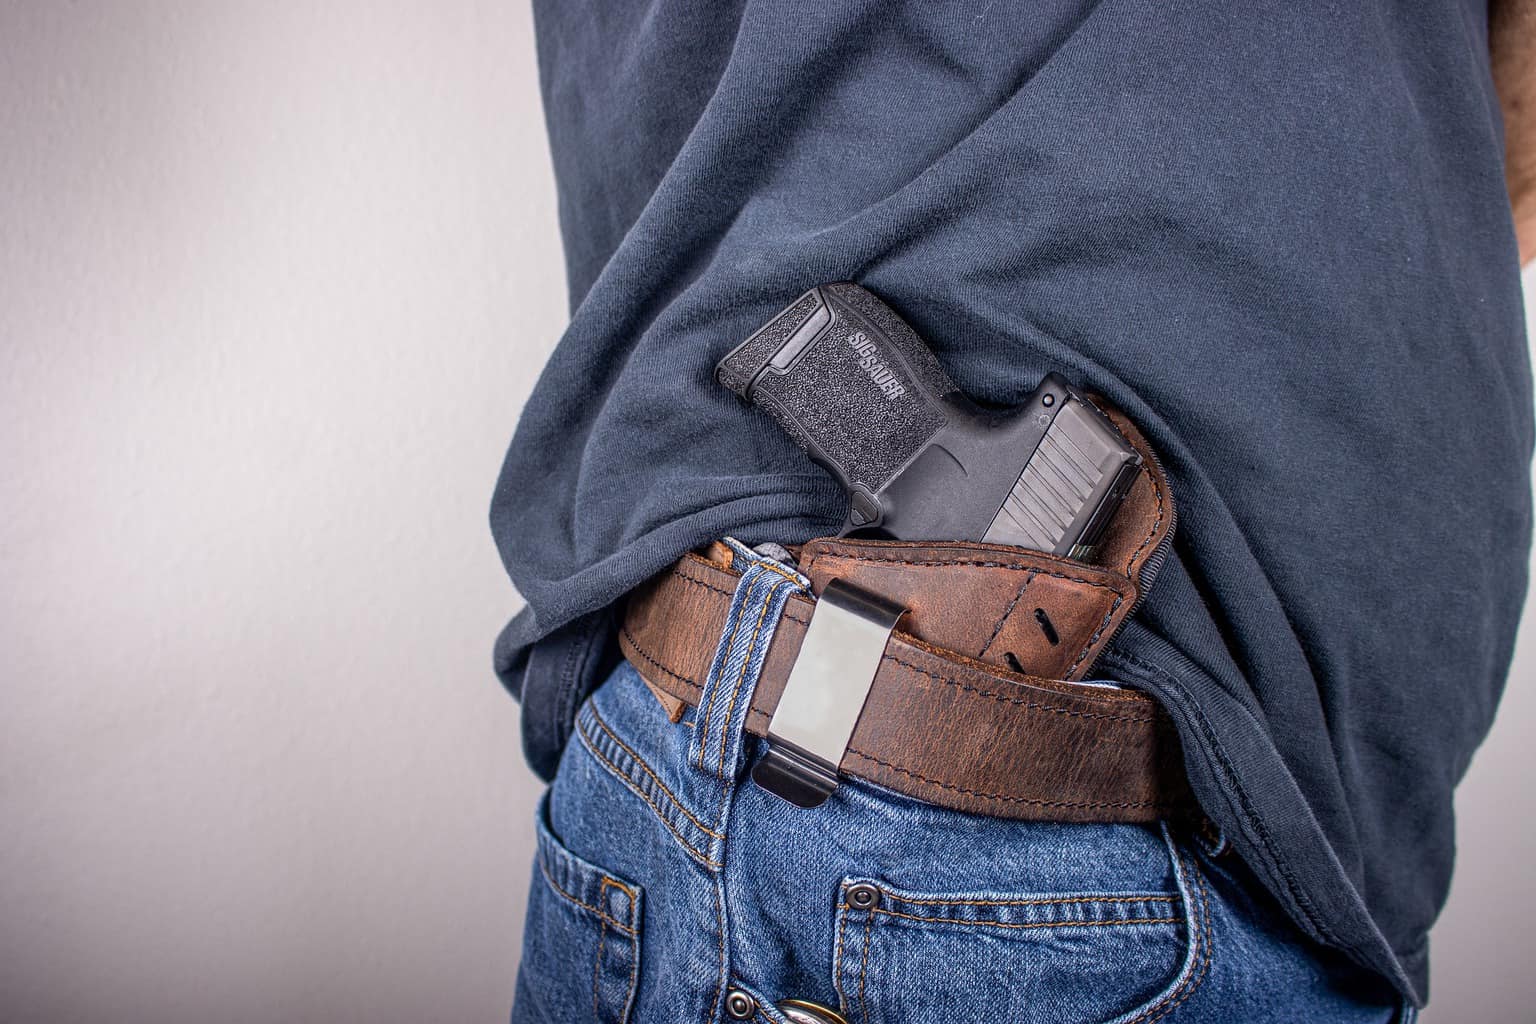 Man wondering if he needs a gun permit to shoot at a gun range in Arizona